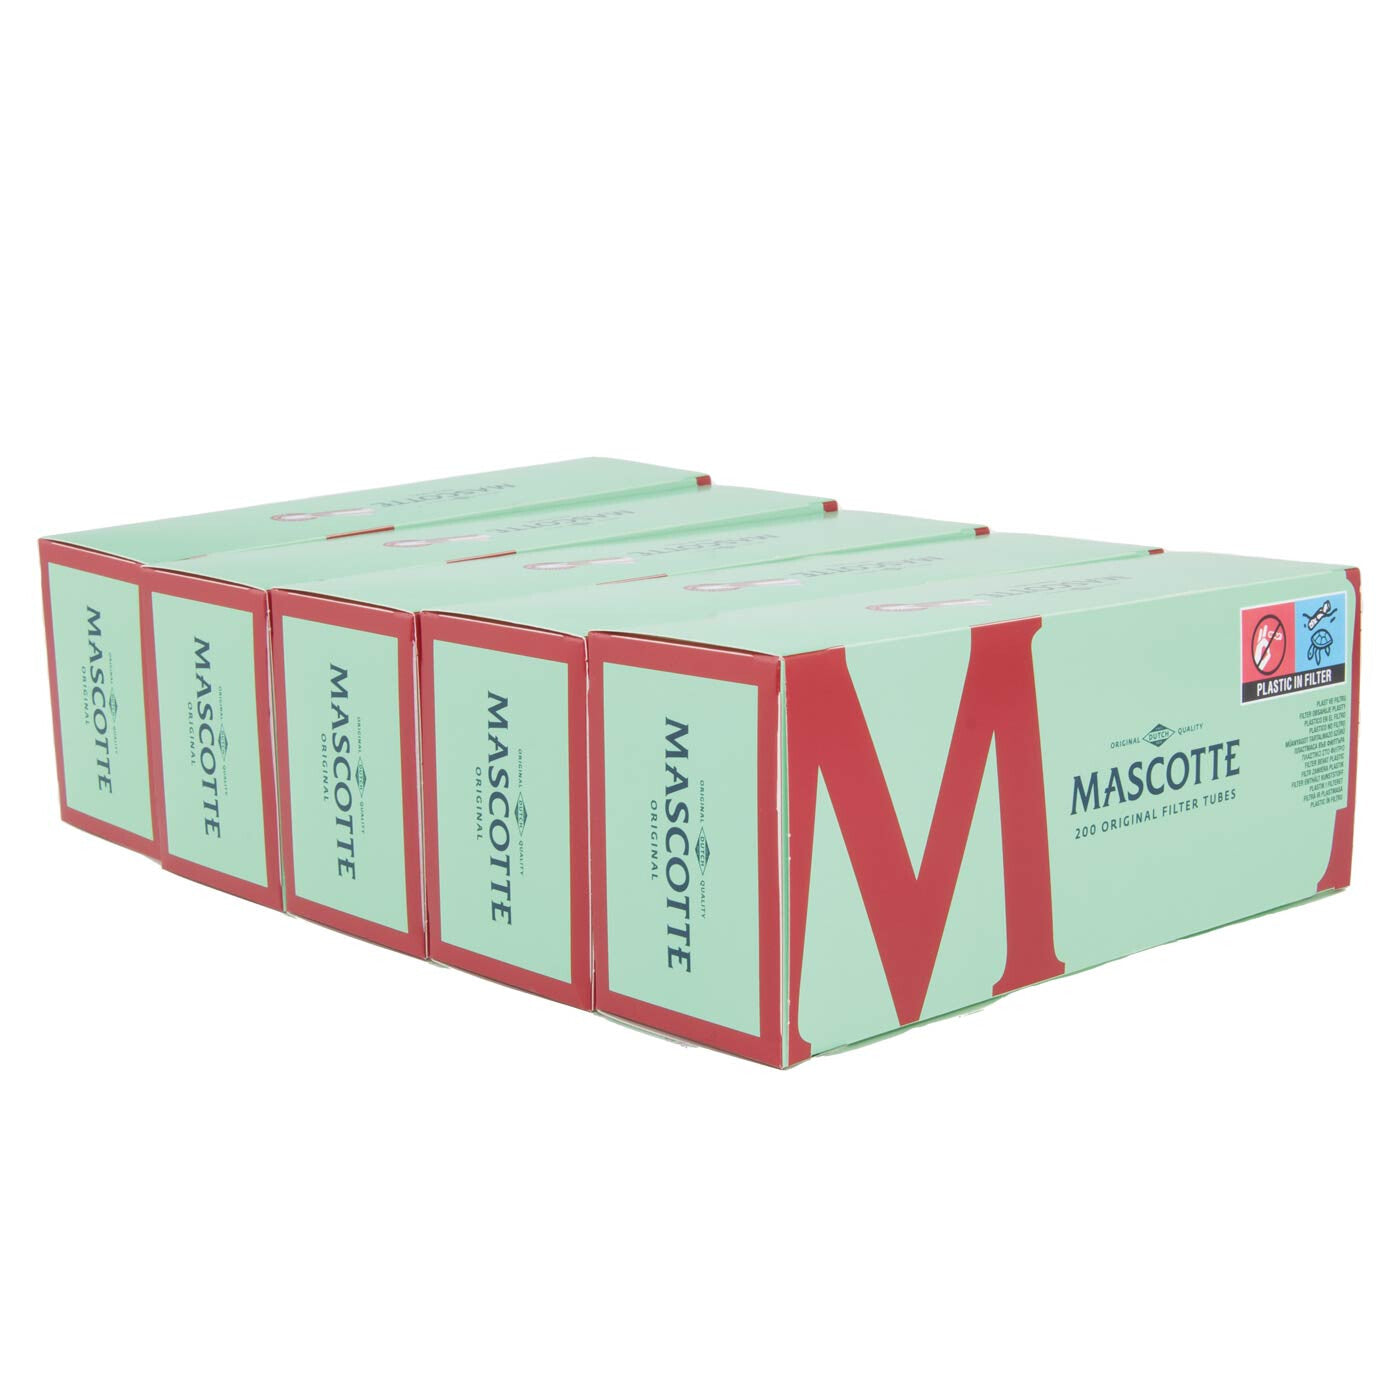 Seal Mascotte Classic Filter Box 200 Tubes 5Pcs